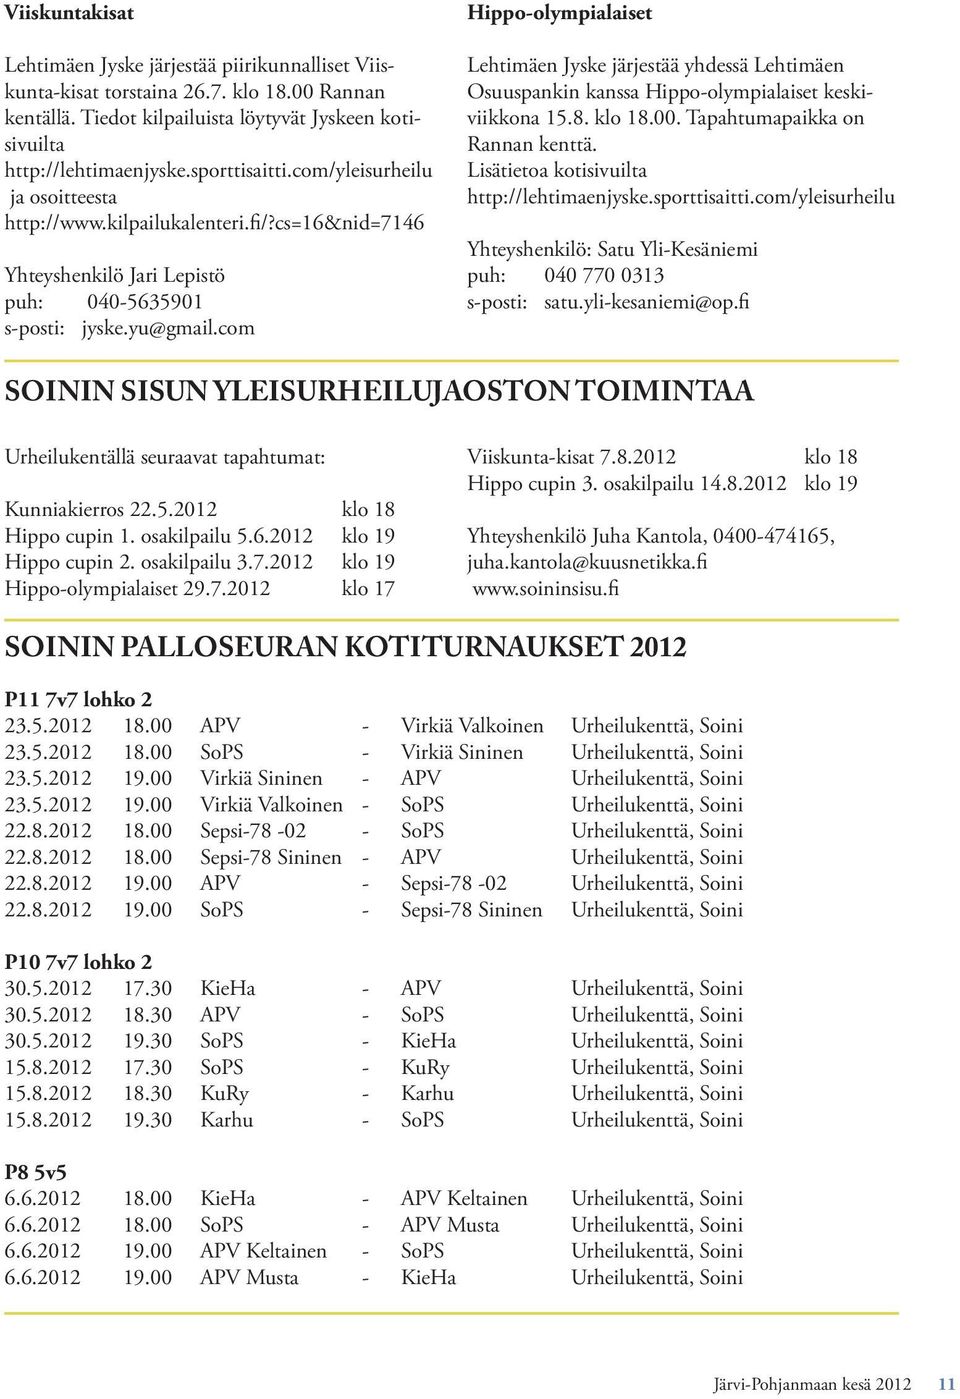 com Hippo-olympialaiset Lehtimäen Jyske järjestää yhdessä Lehtimäen Osuuspankin kanssa Hippo-olympialaiset keskiviikkona 15.8. klo 18.00. Tapahtumapaikka on Rannan kenttä.